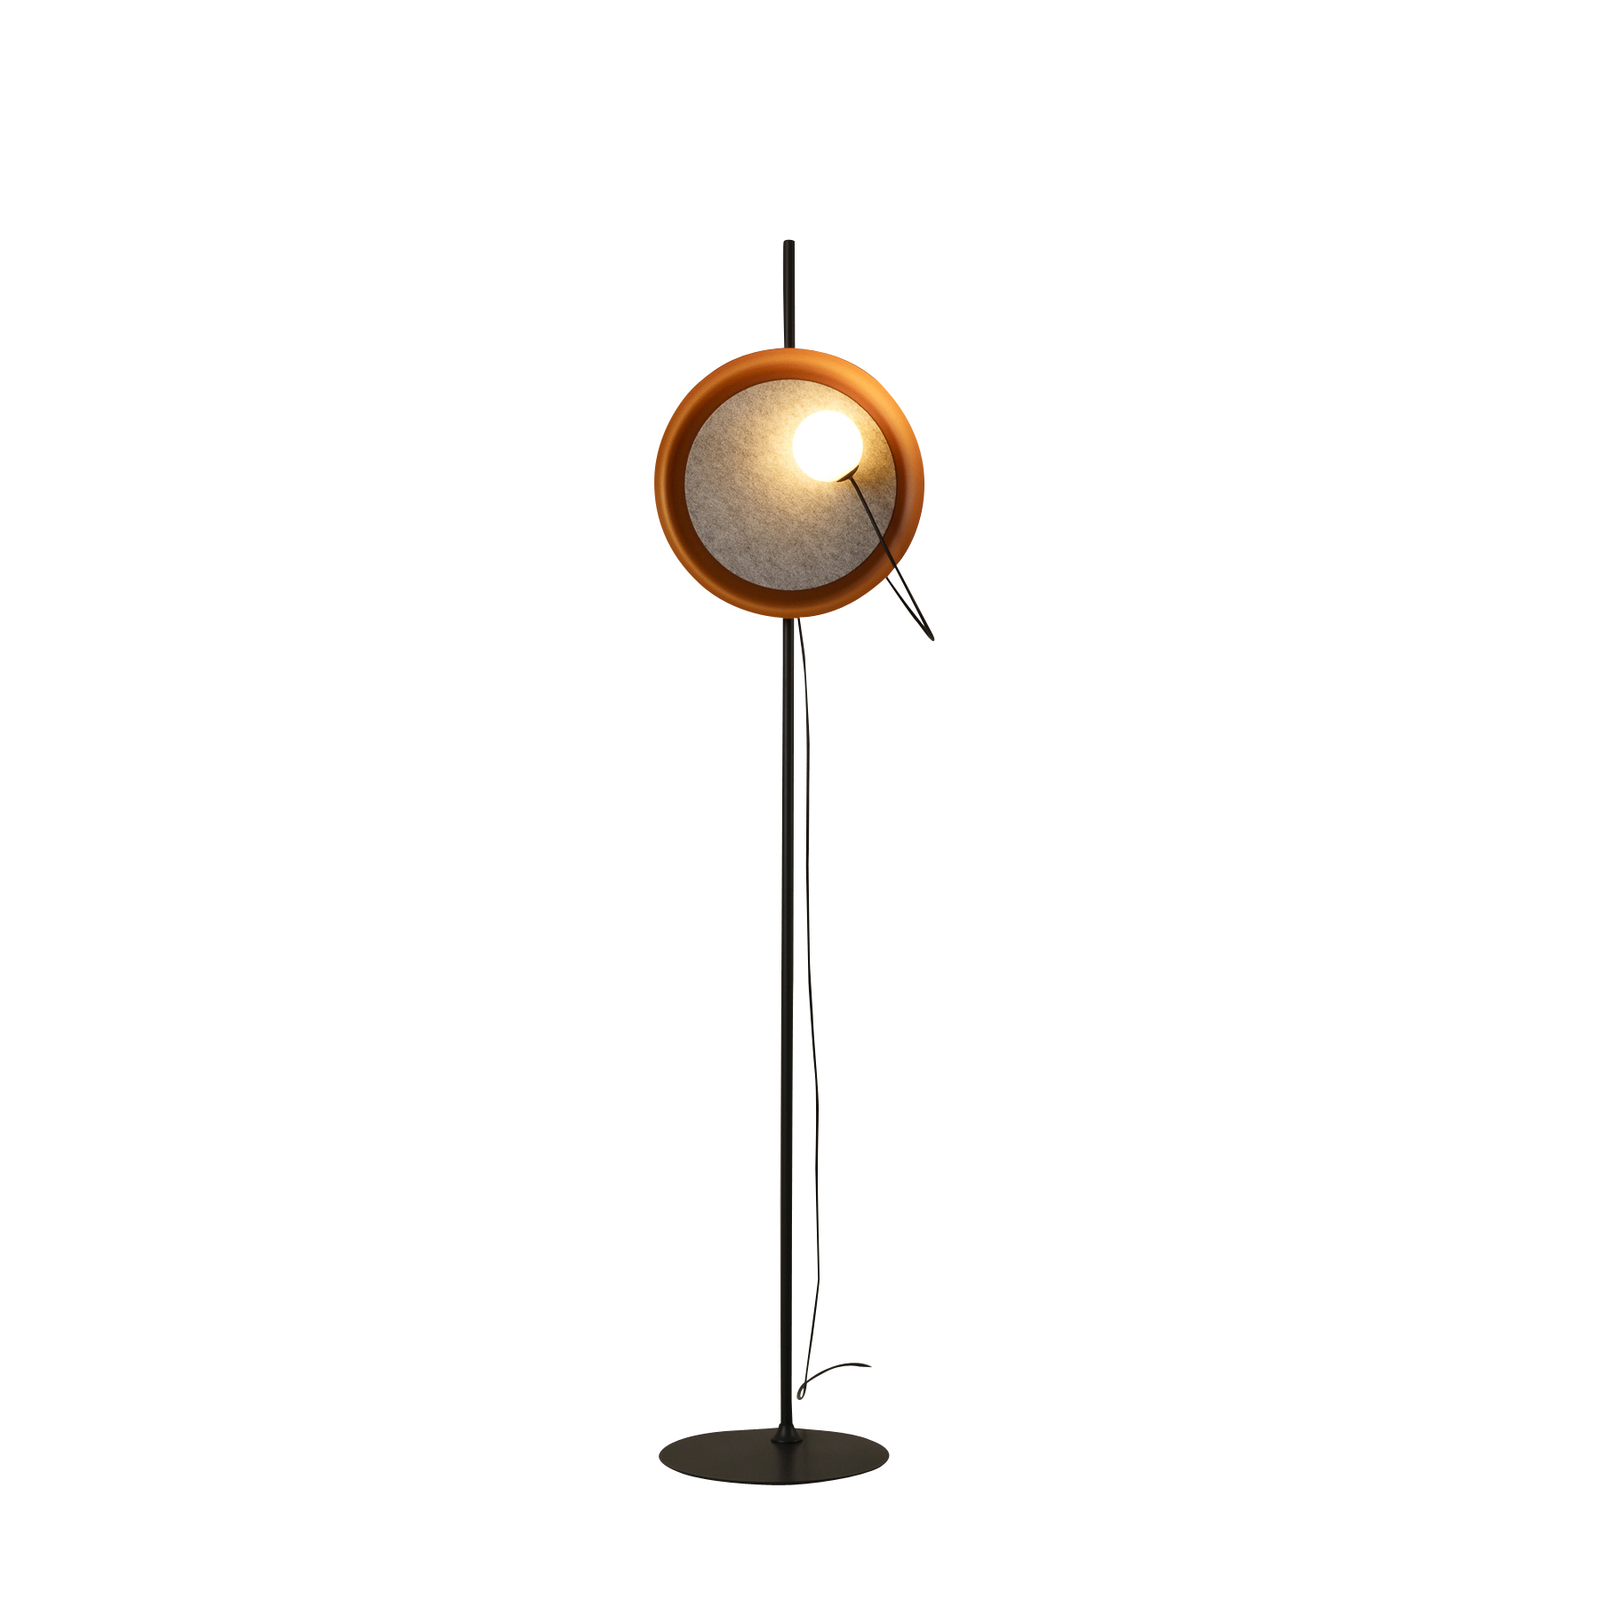 Milan Drôtová stojacia lampa Ø 38 cm medená metalická/antracitová